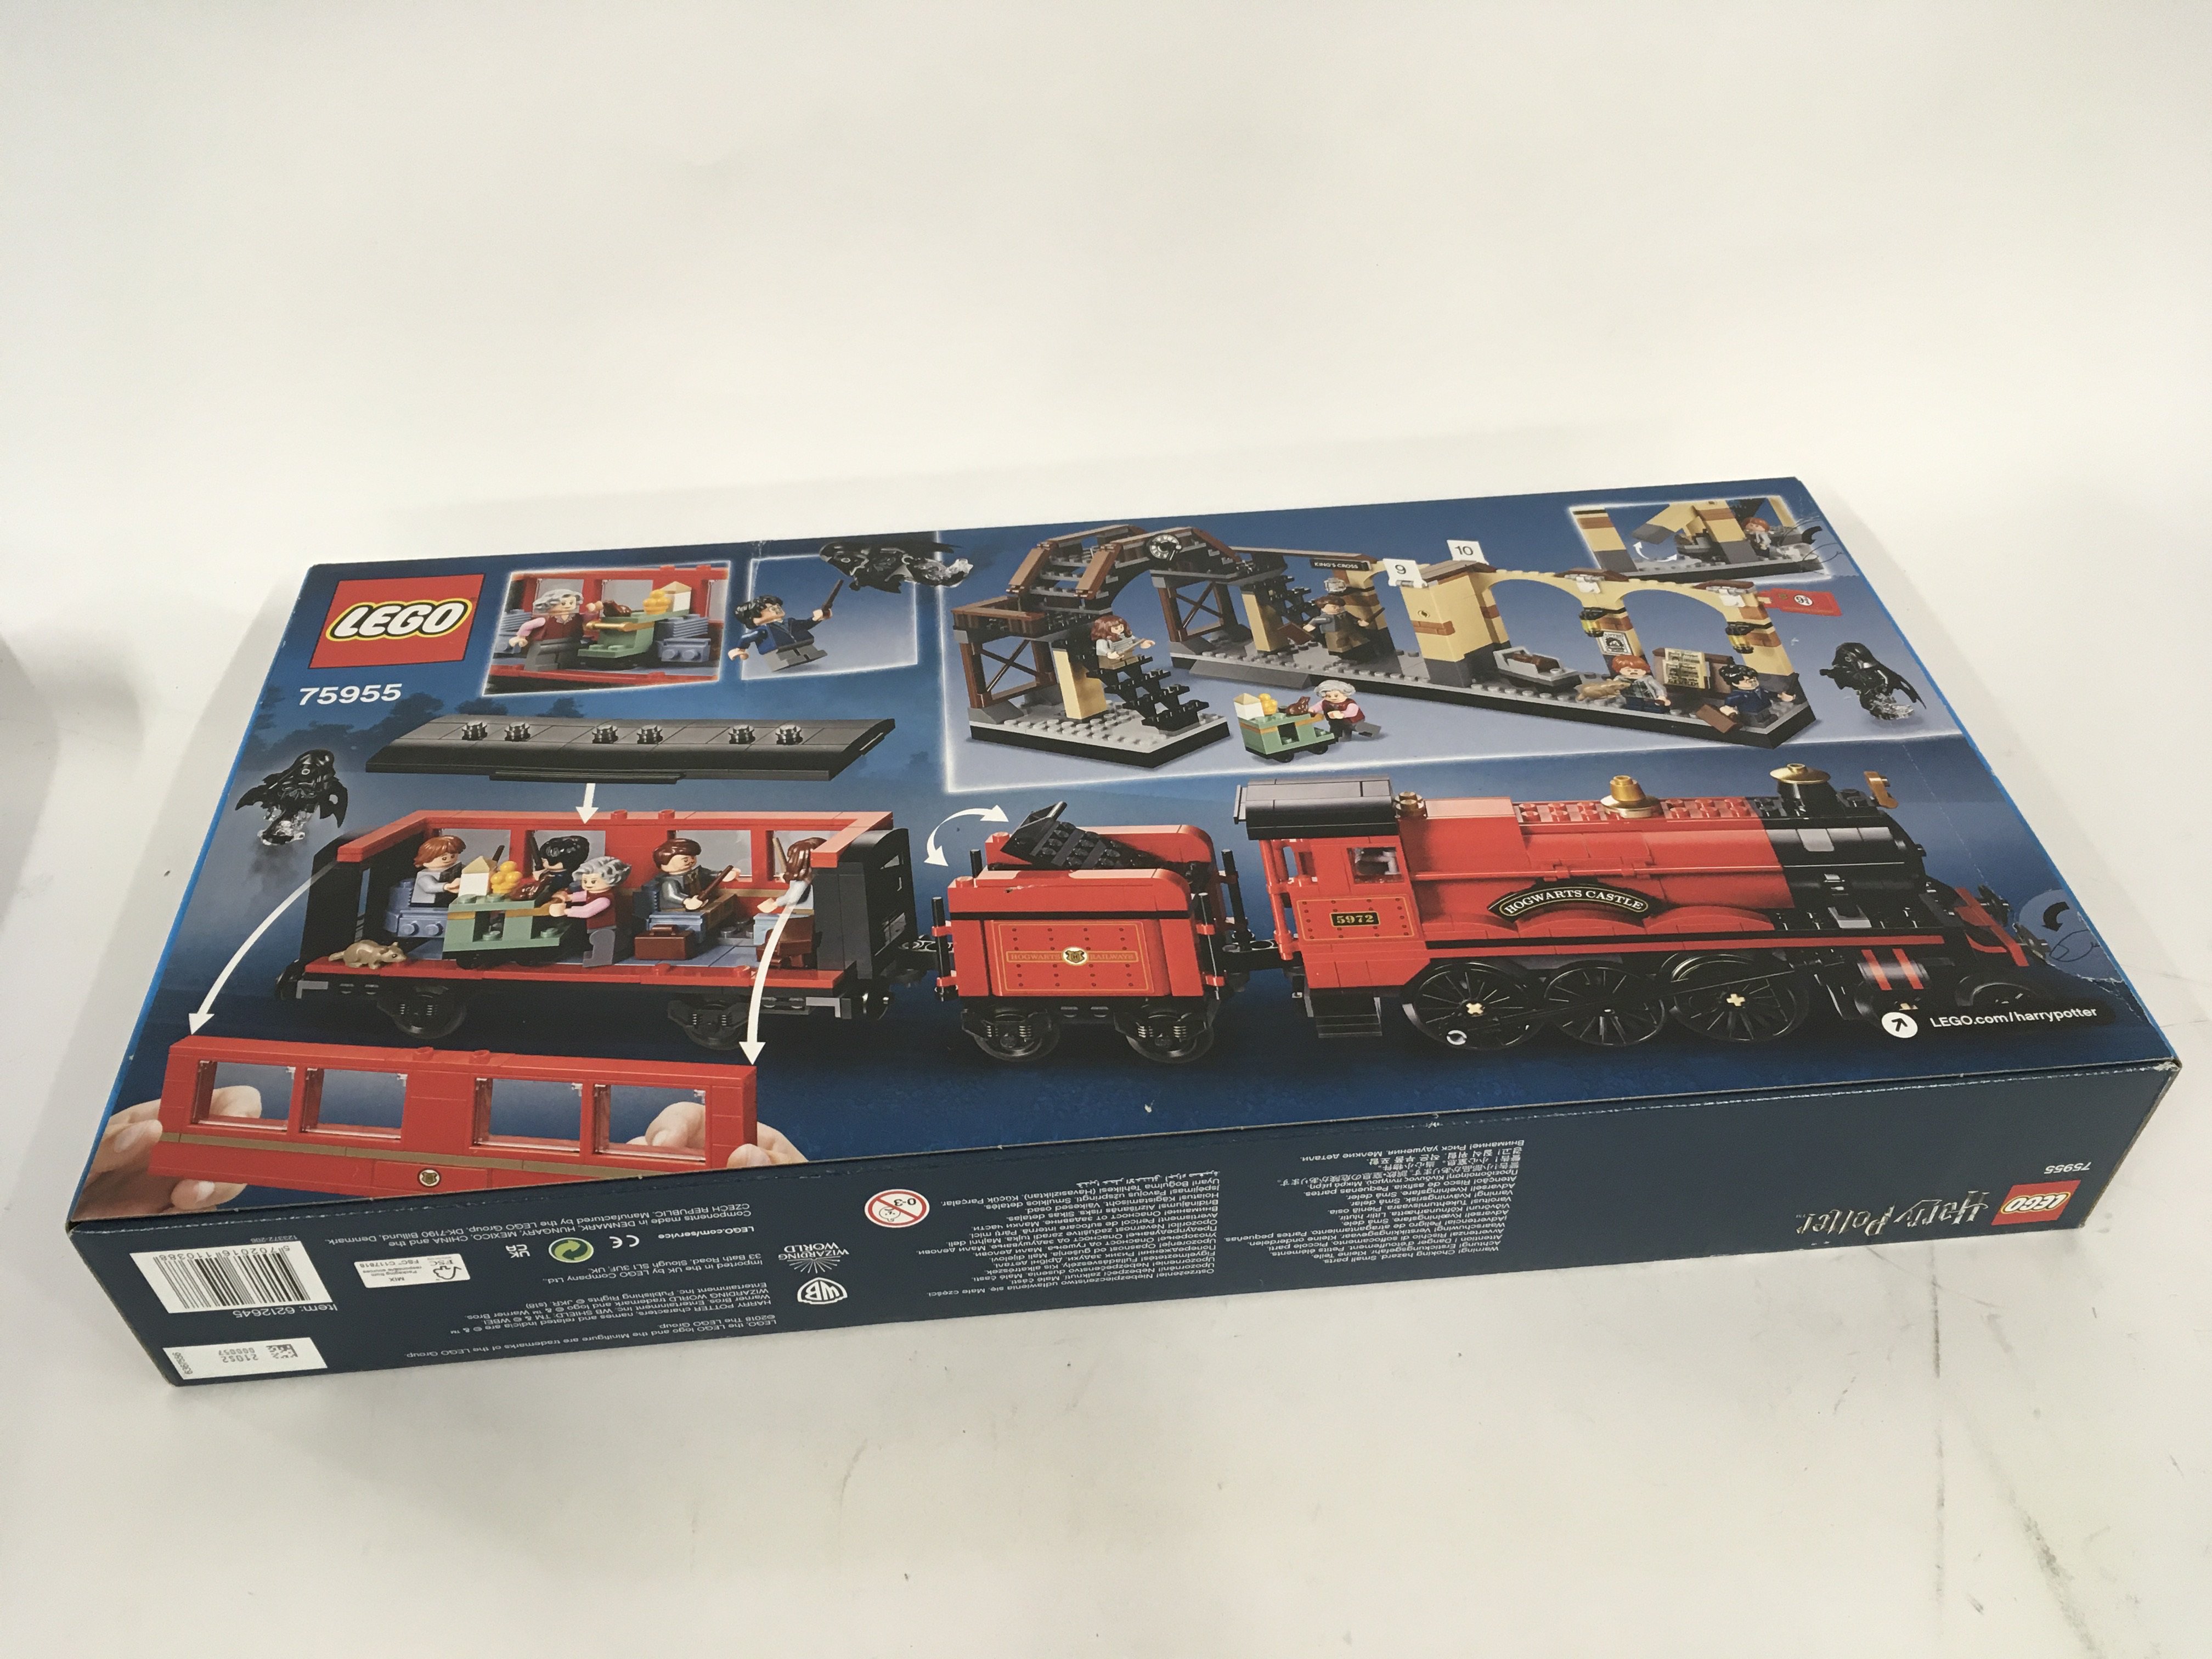 Sealed and unopened boxed Lego set. Harry Potter. 75955 HOGWARTS EXPRESS. - Image 2 of 2